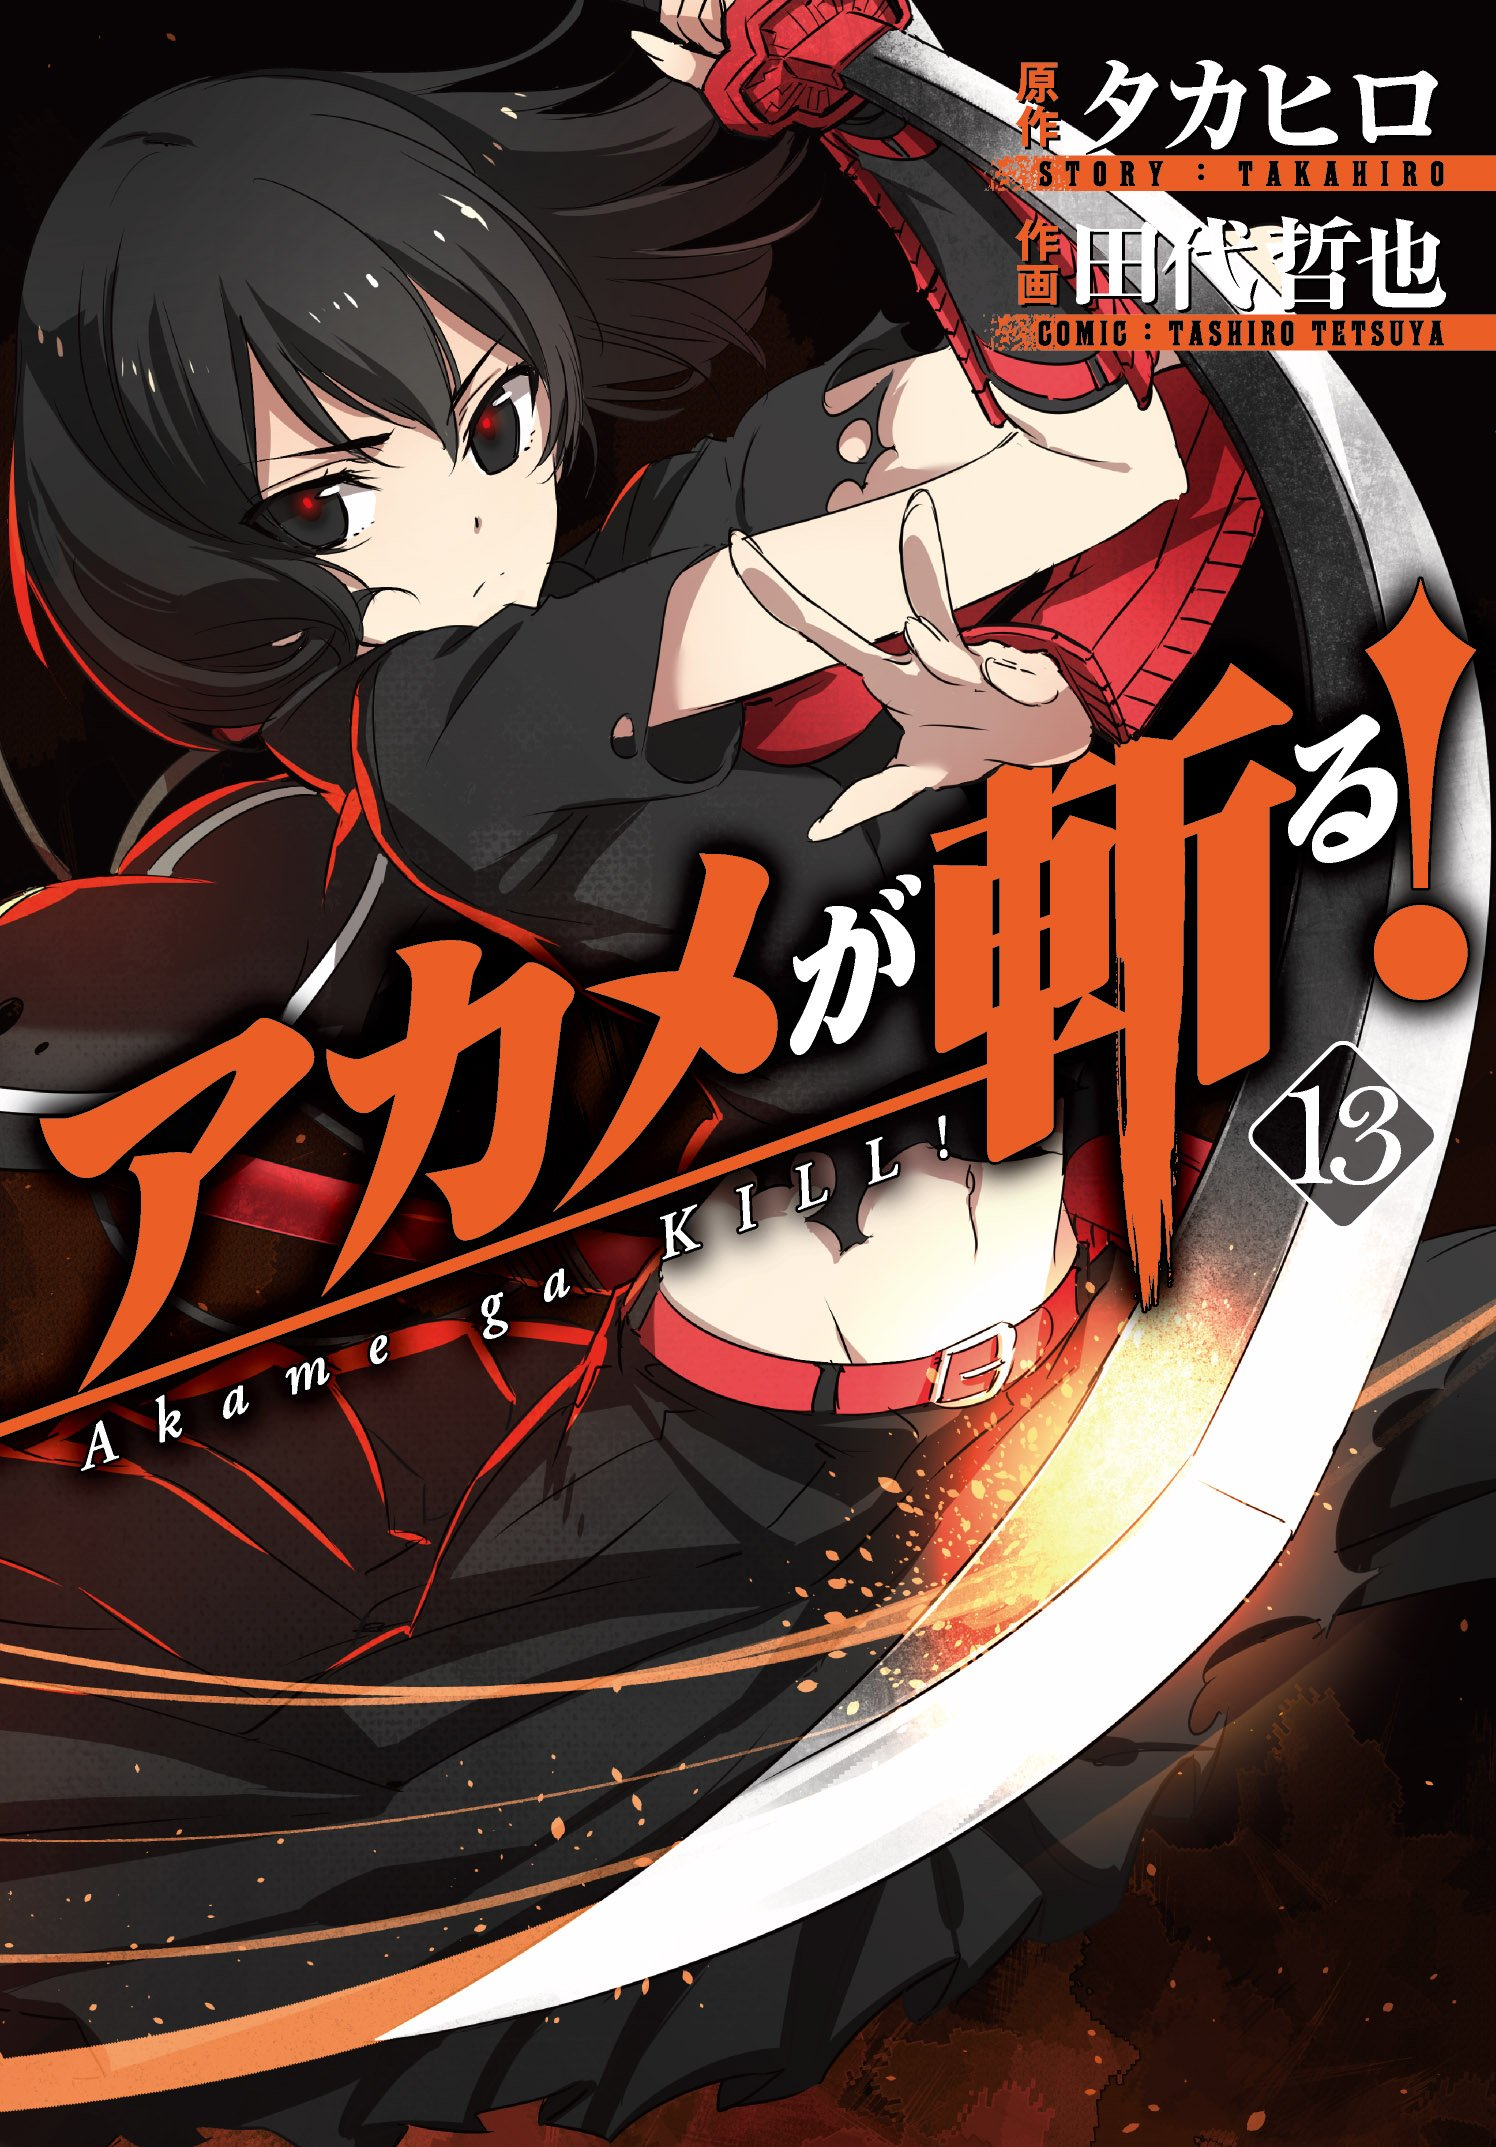 Chapter 1, Akame Ga Kill! Wiki